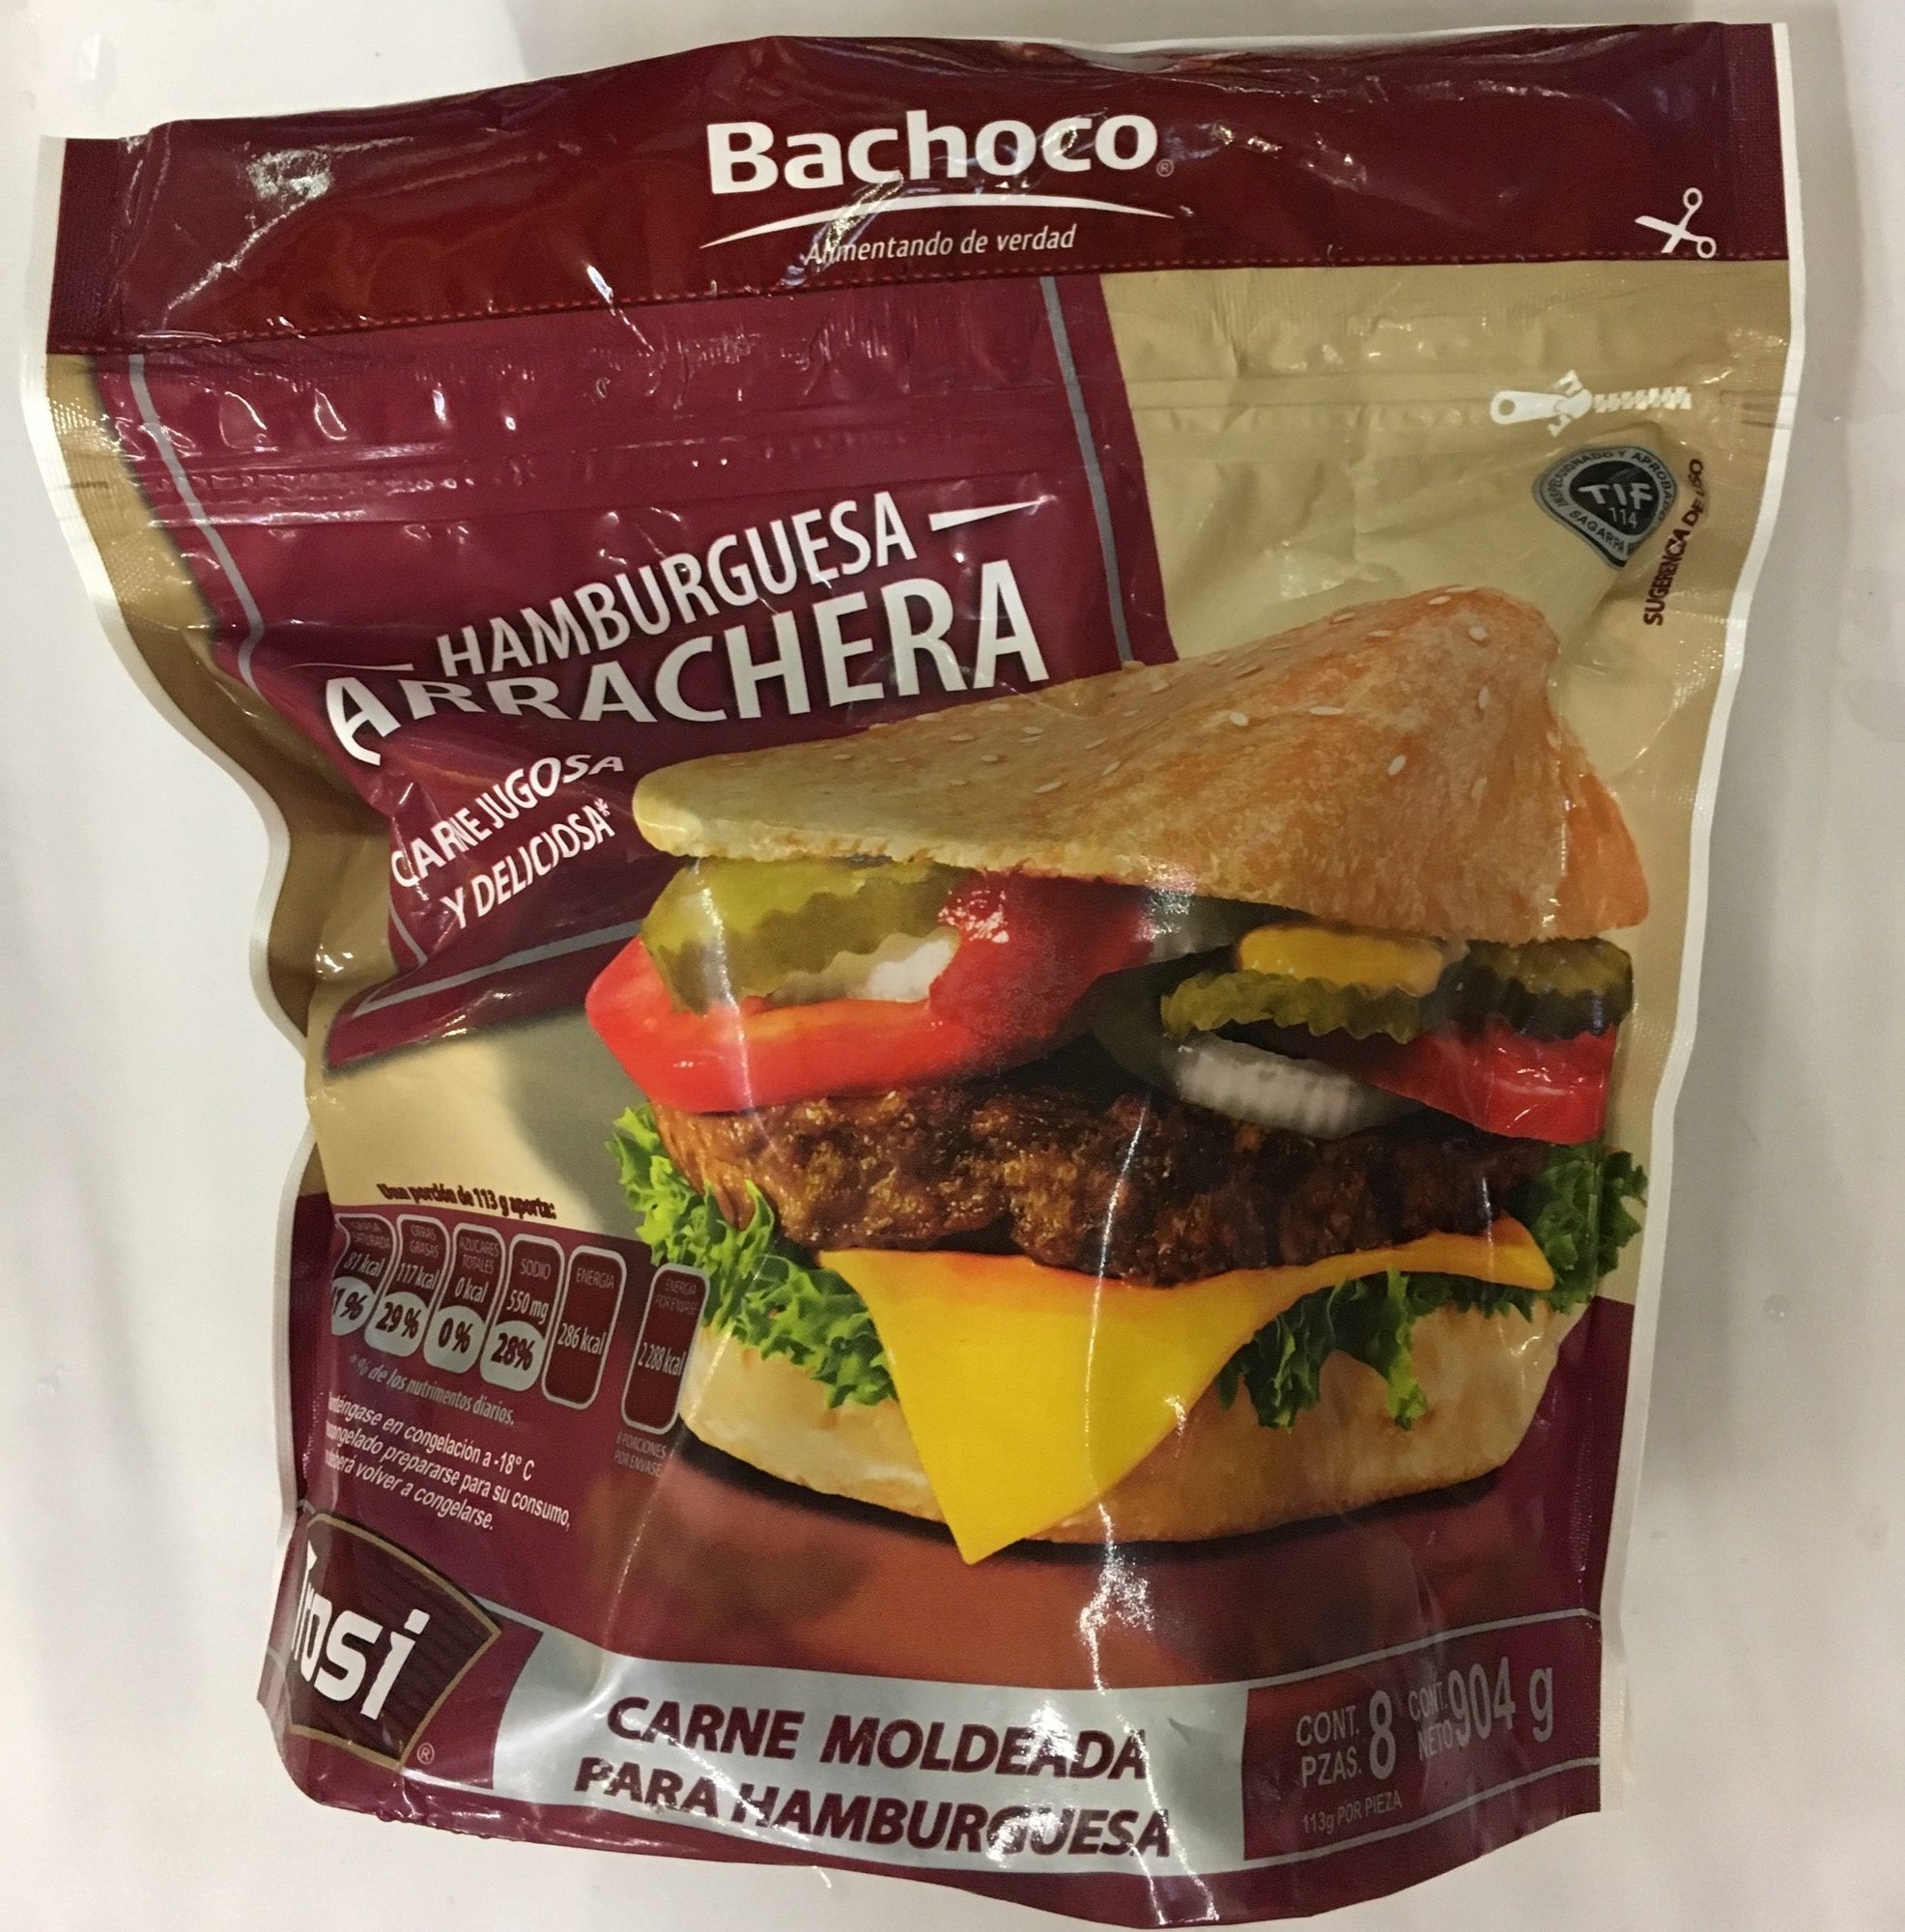 Carne para hamburguesa Arrachera Bachoco - Product - es